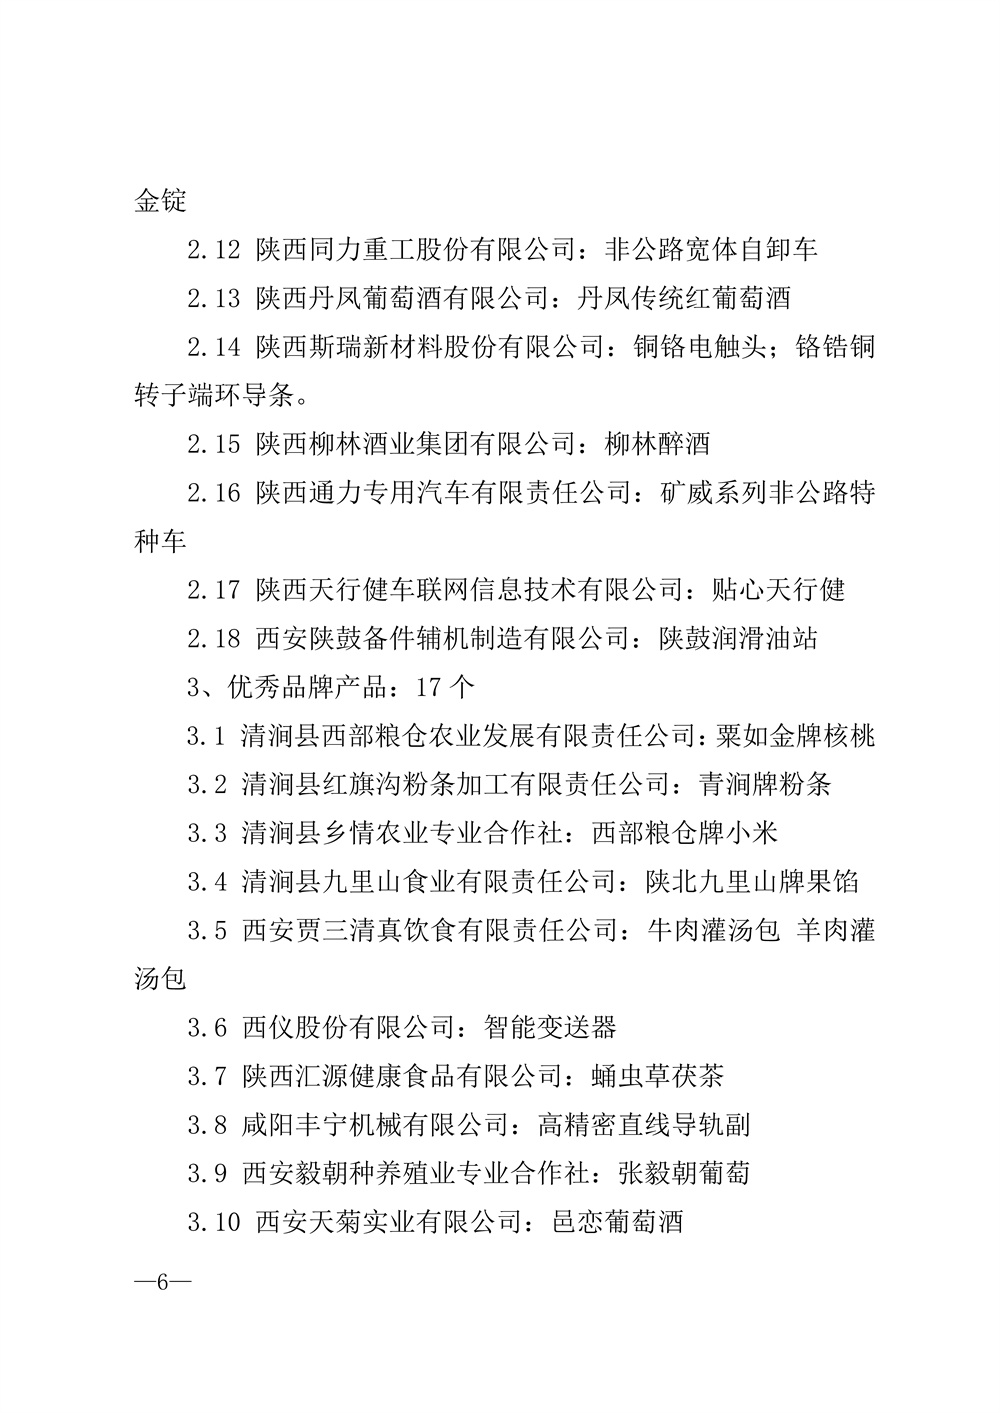 22-52陕西省2021年度品牌评选公示通知_页面_06.jpg